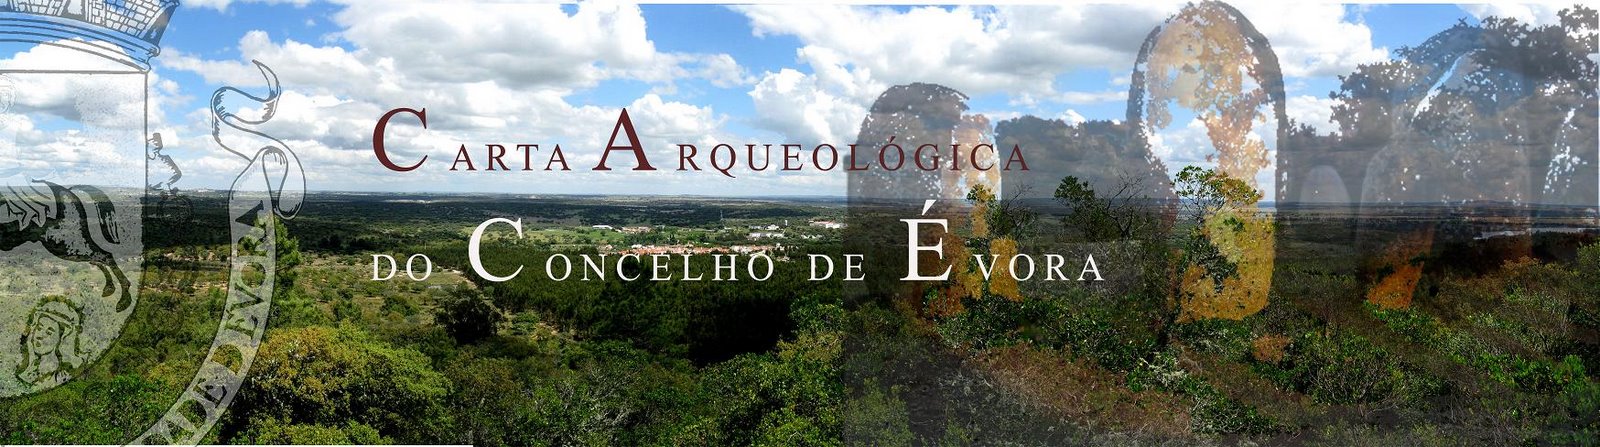 Carta Arqueológica do Concelho de Évora